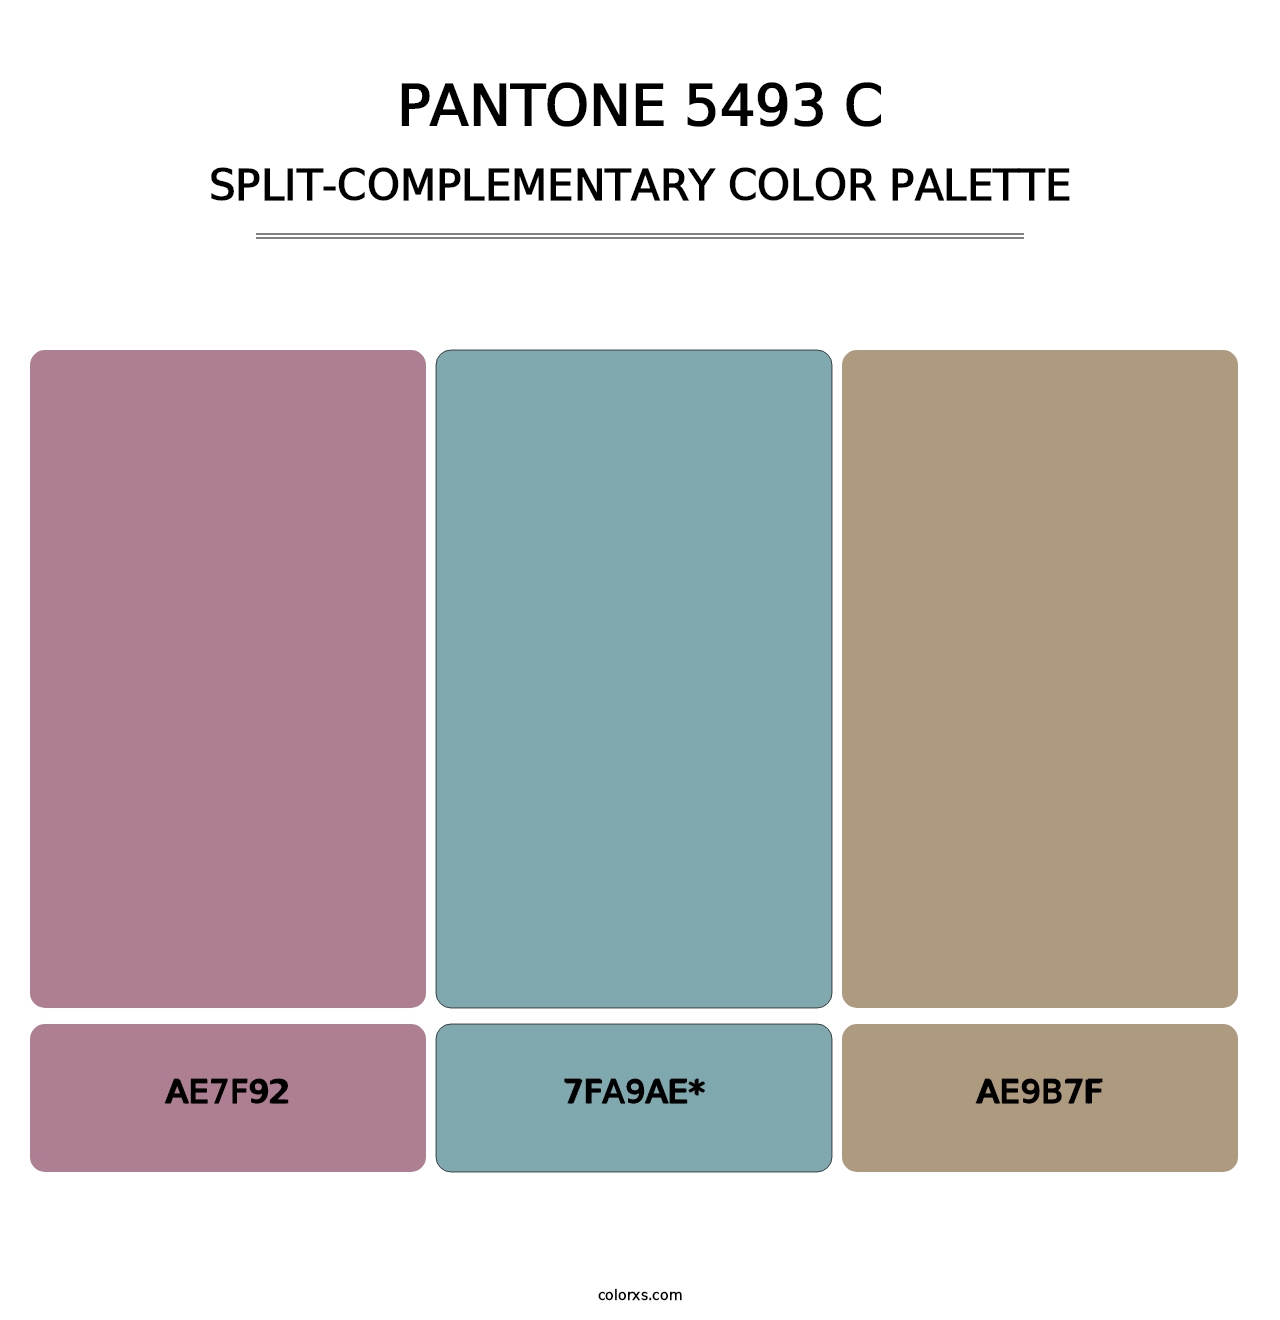 PANTONE 5493 C - Split-Complementary Color Palette